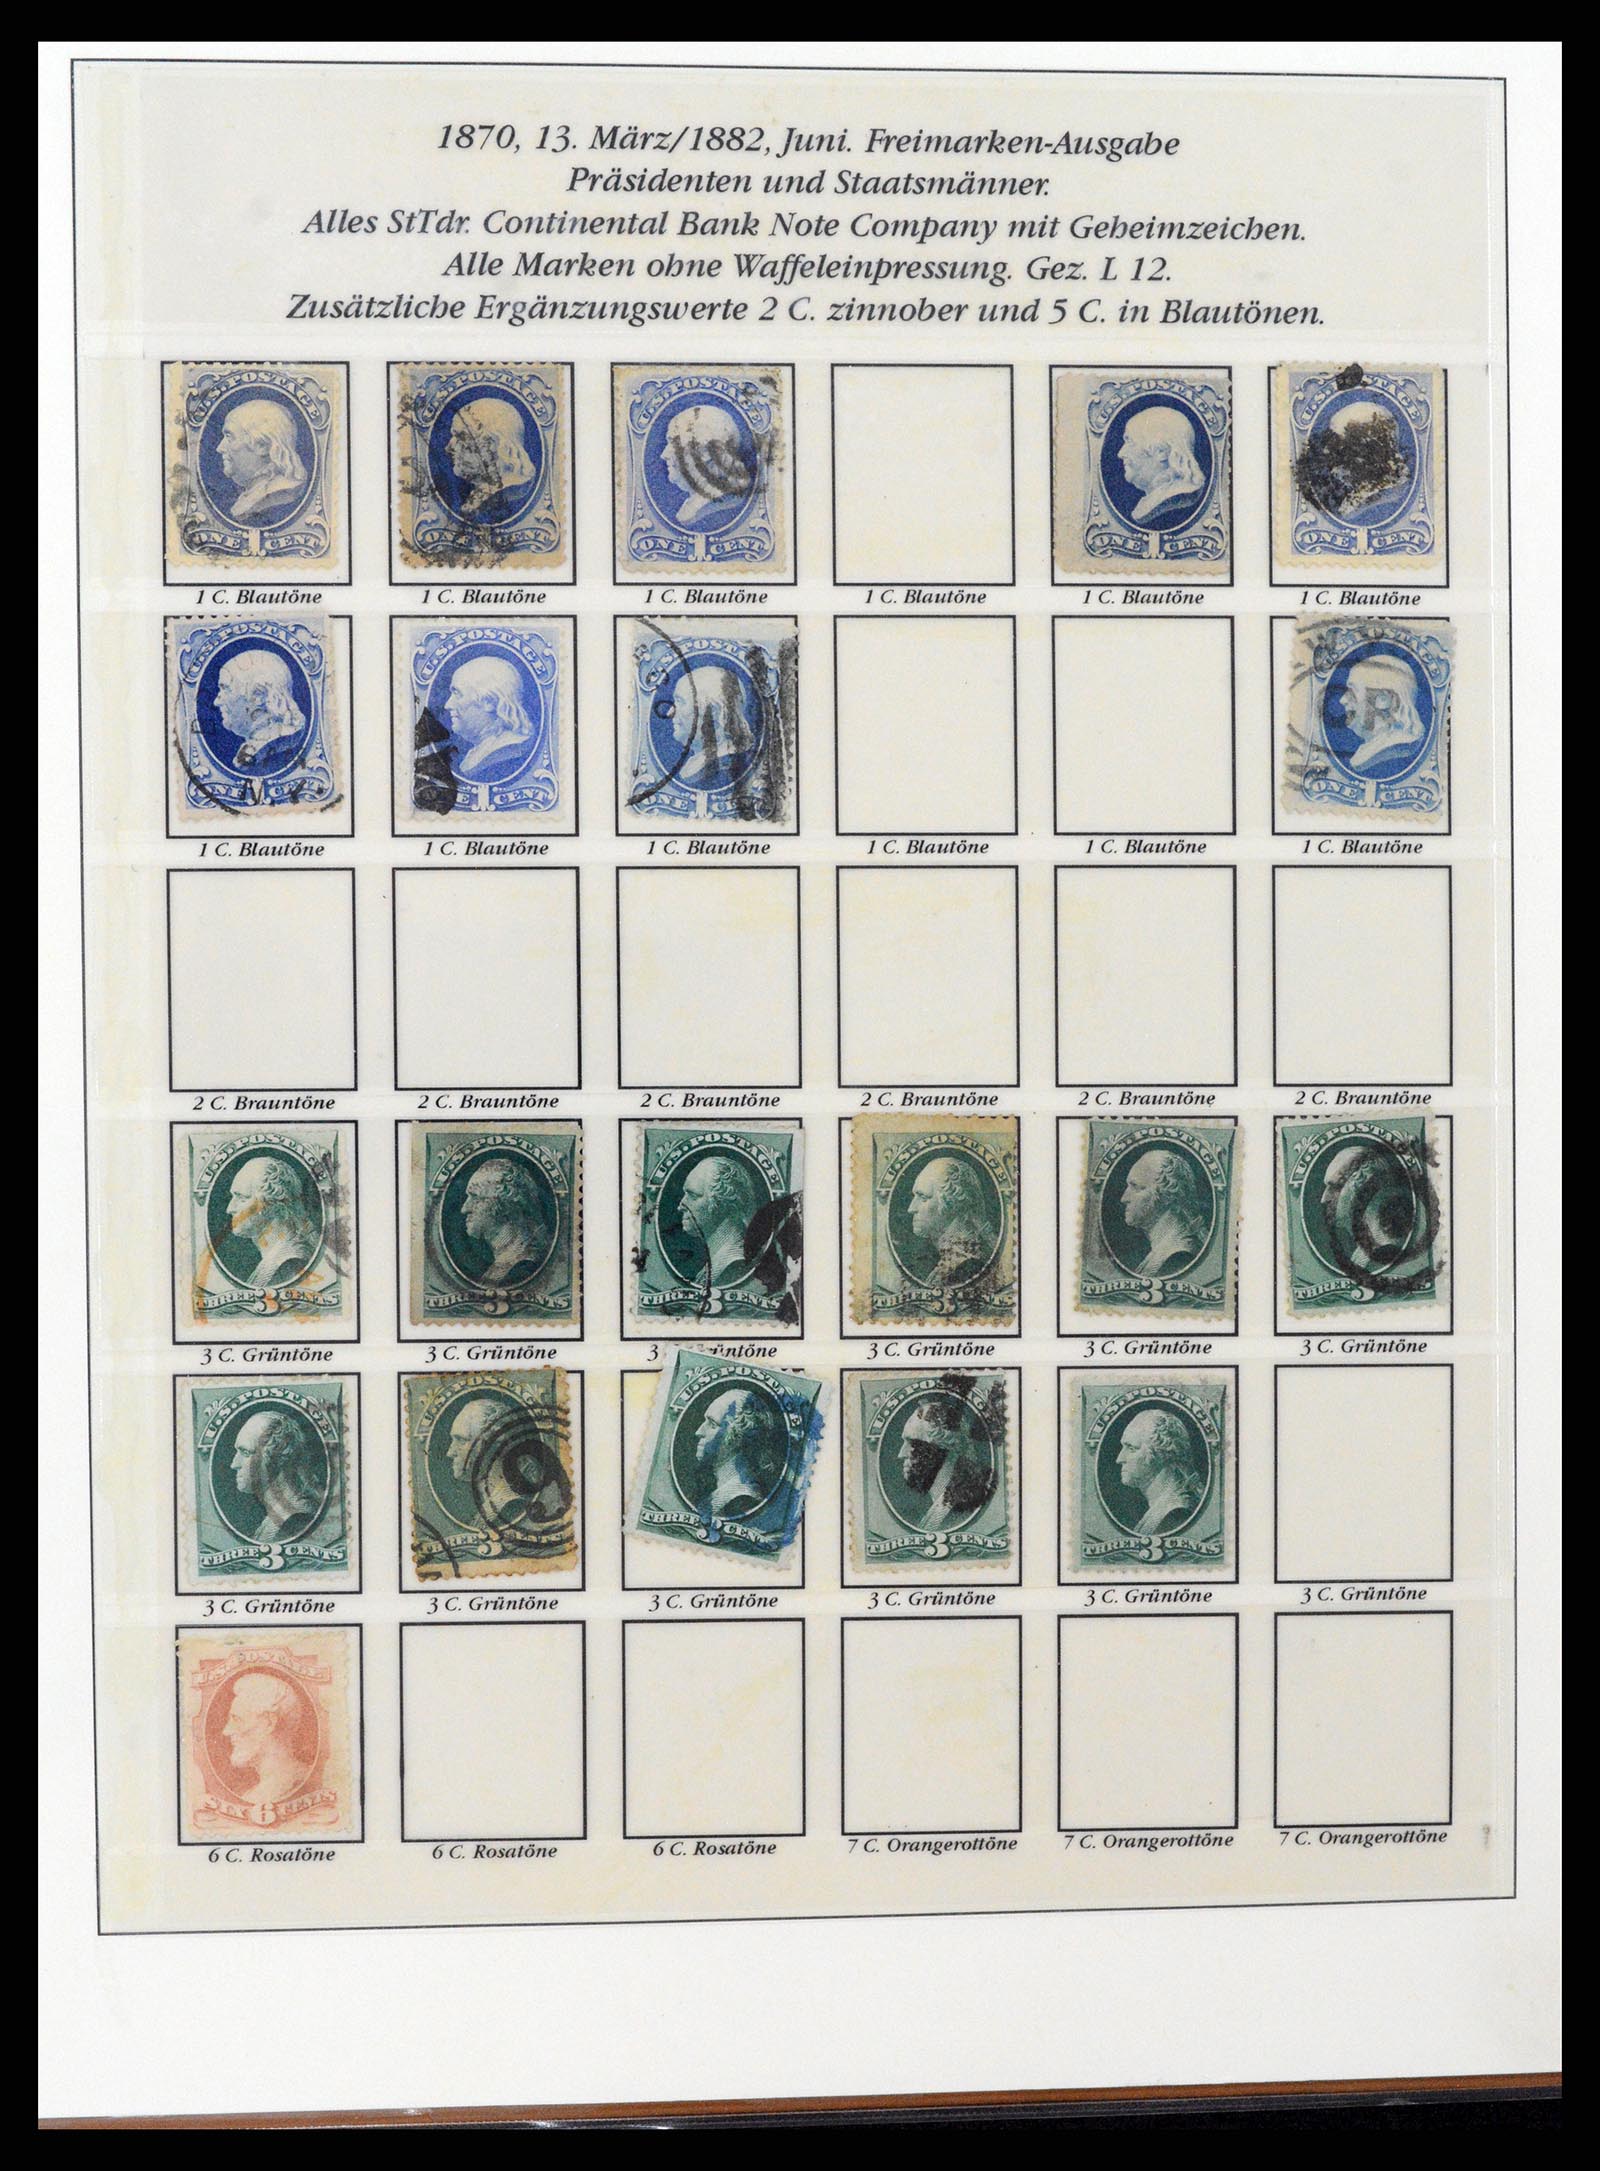 37653 008 - Stamp collection 37653 USA 1870-1954.